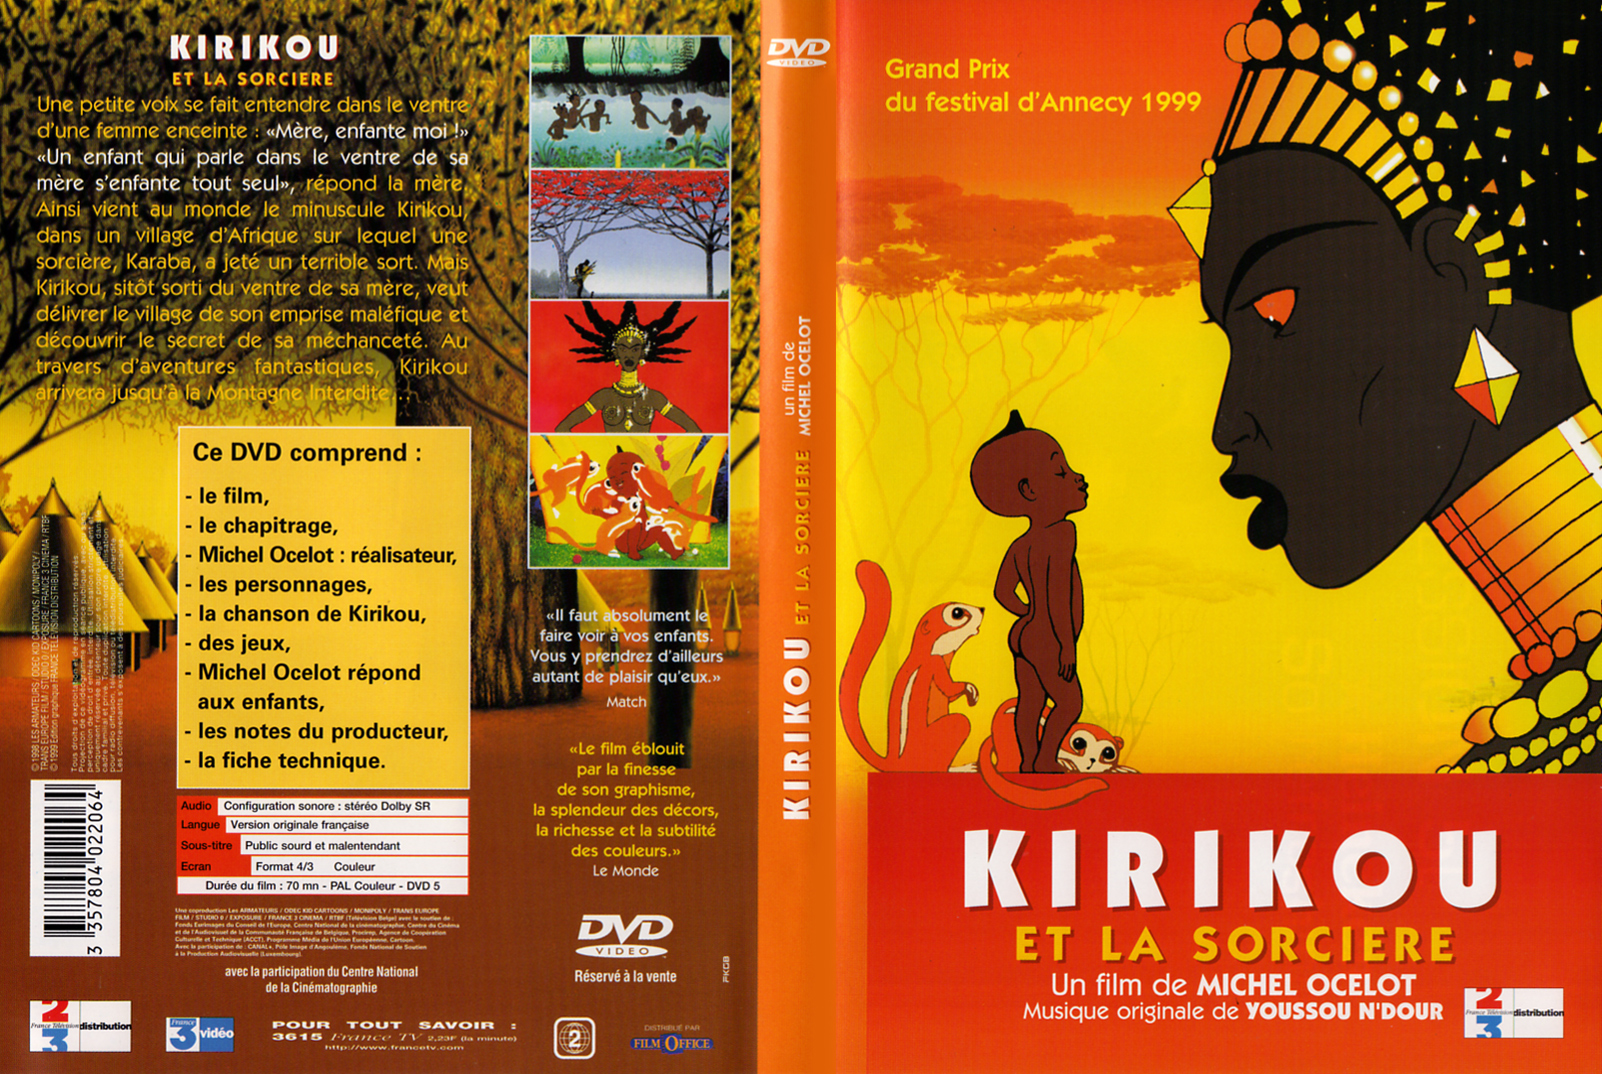 Couv DVD de Kirikou et la sorcière